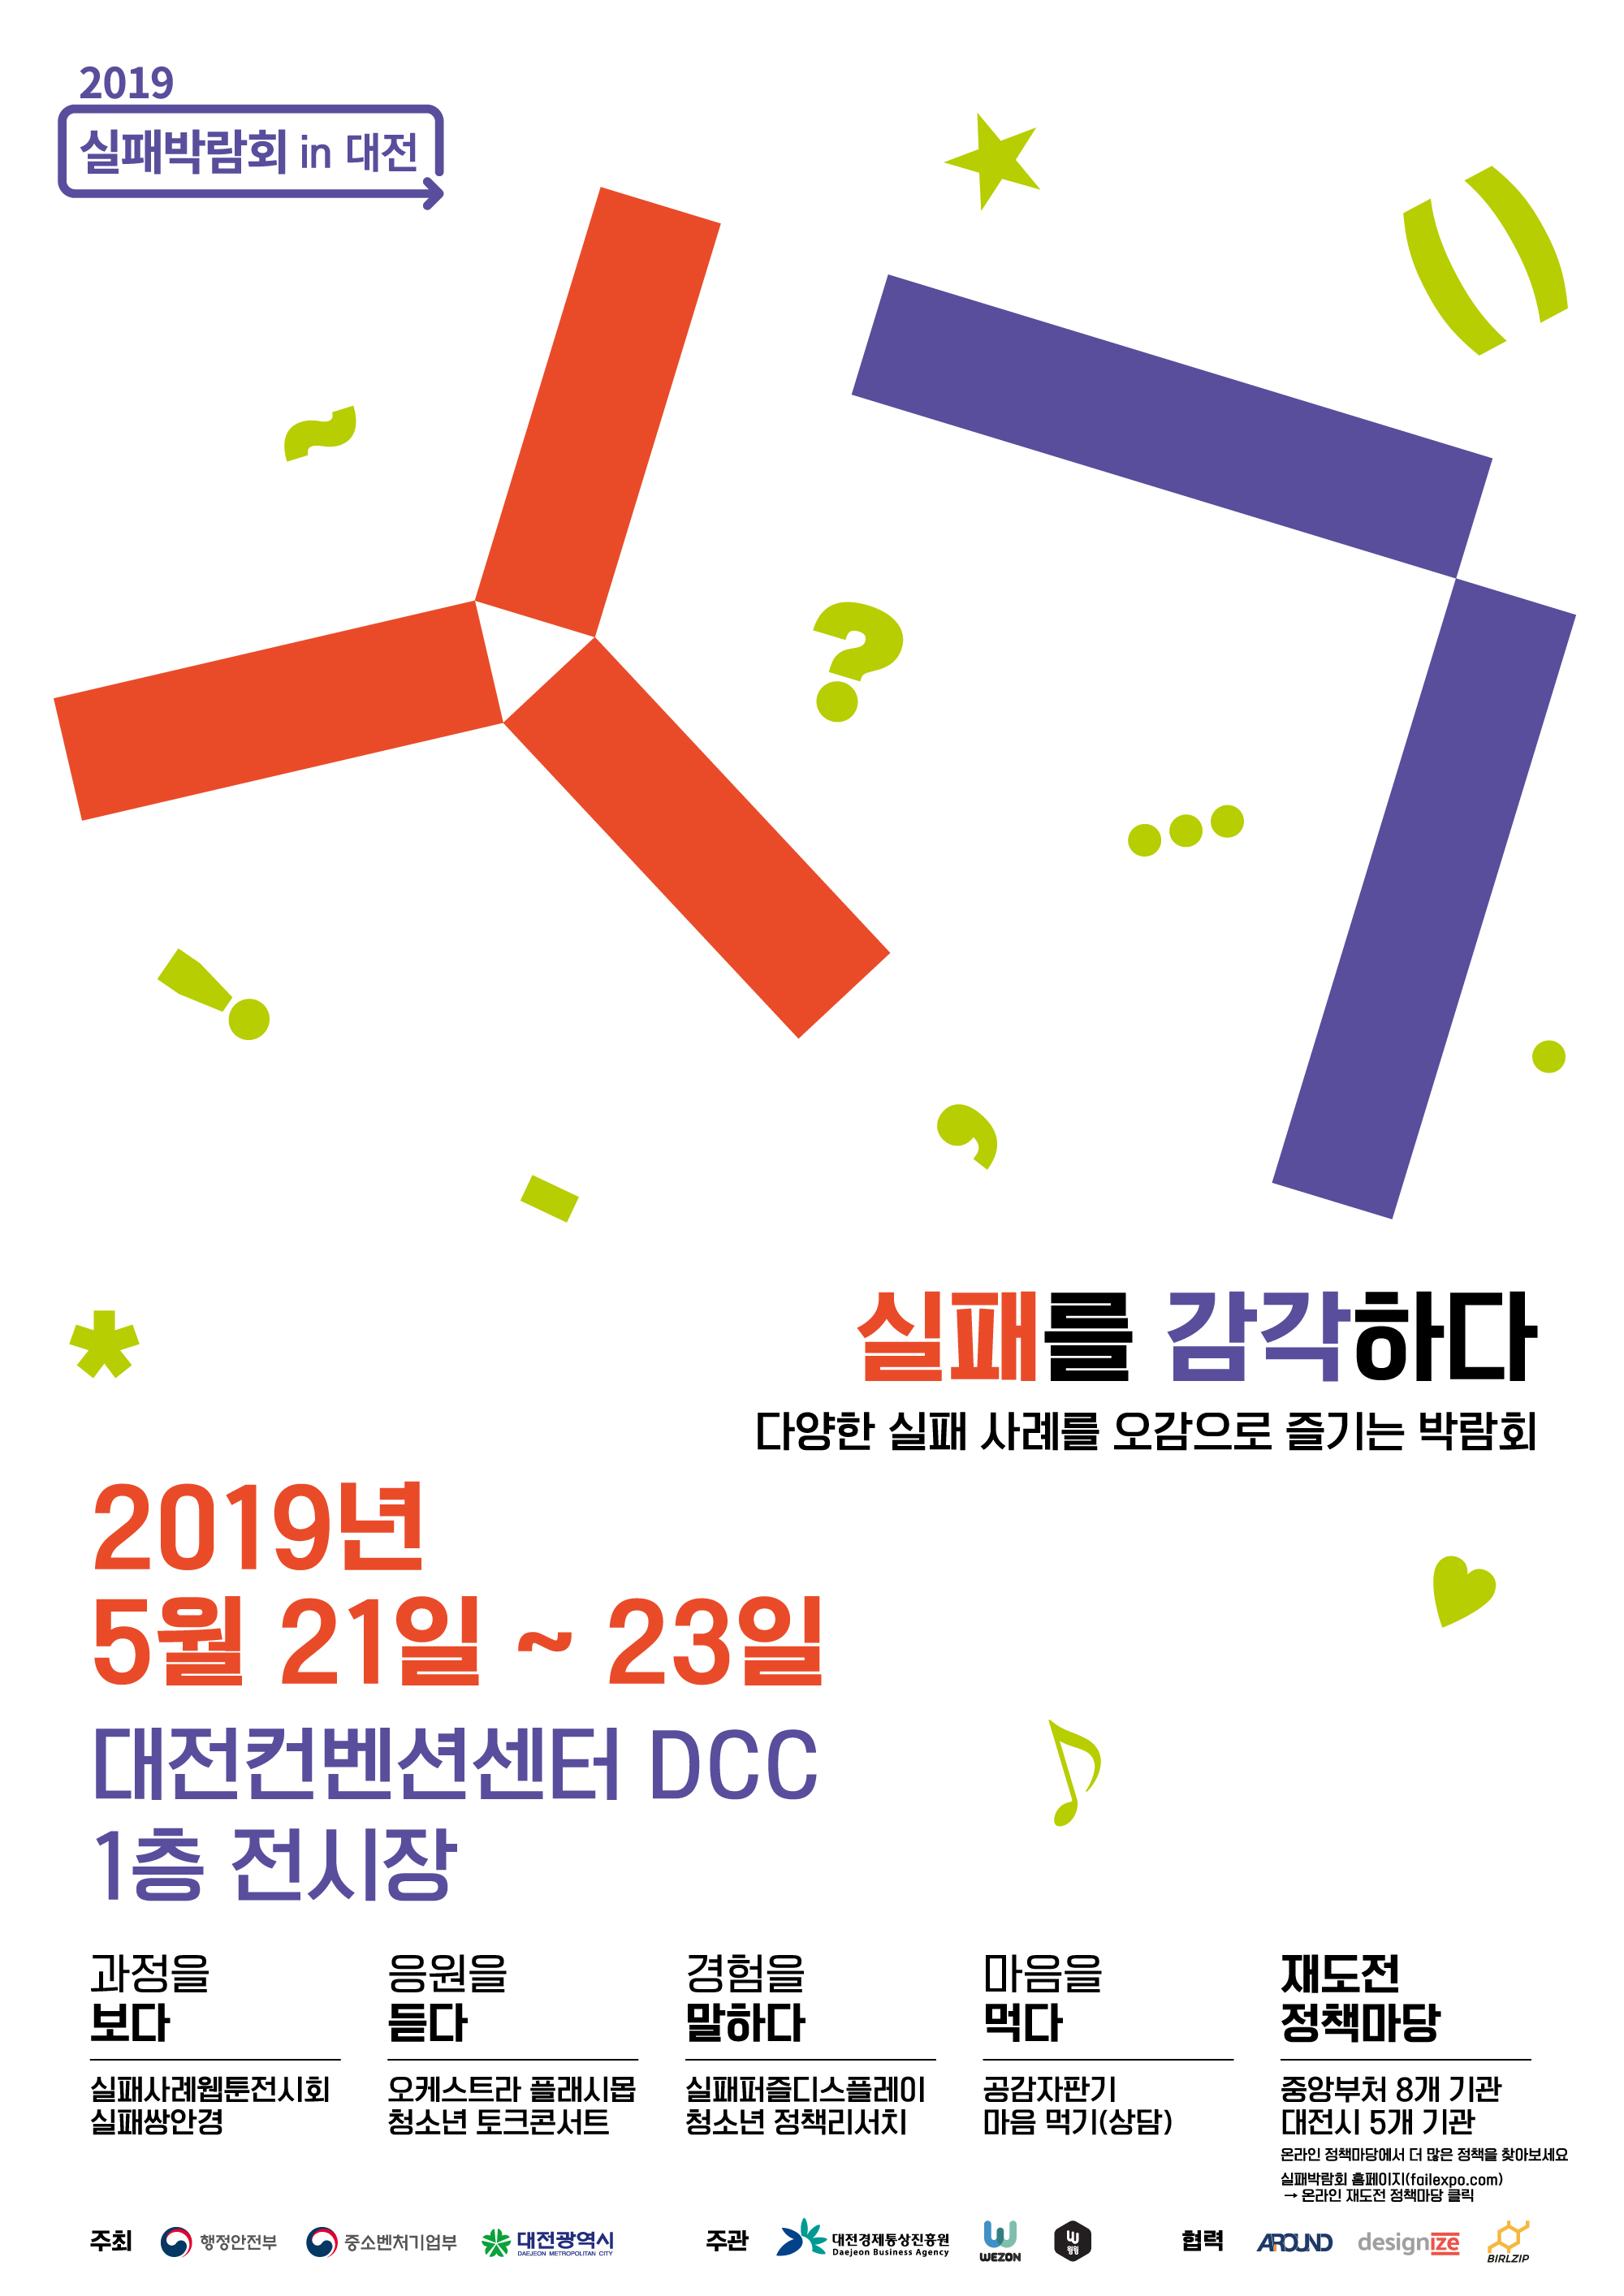 2019  실패박람회  개최  /  5.21(화)~23(목), DCC